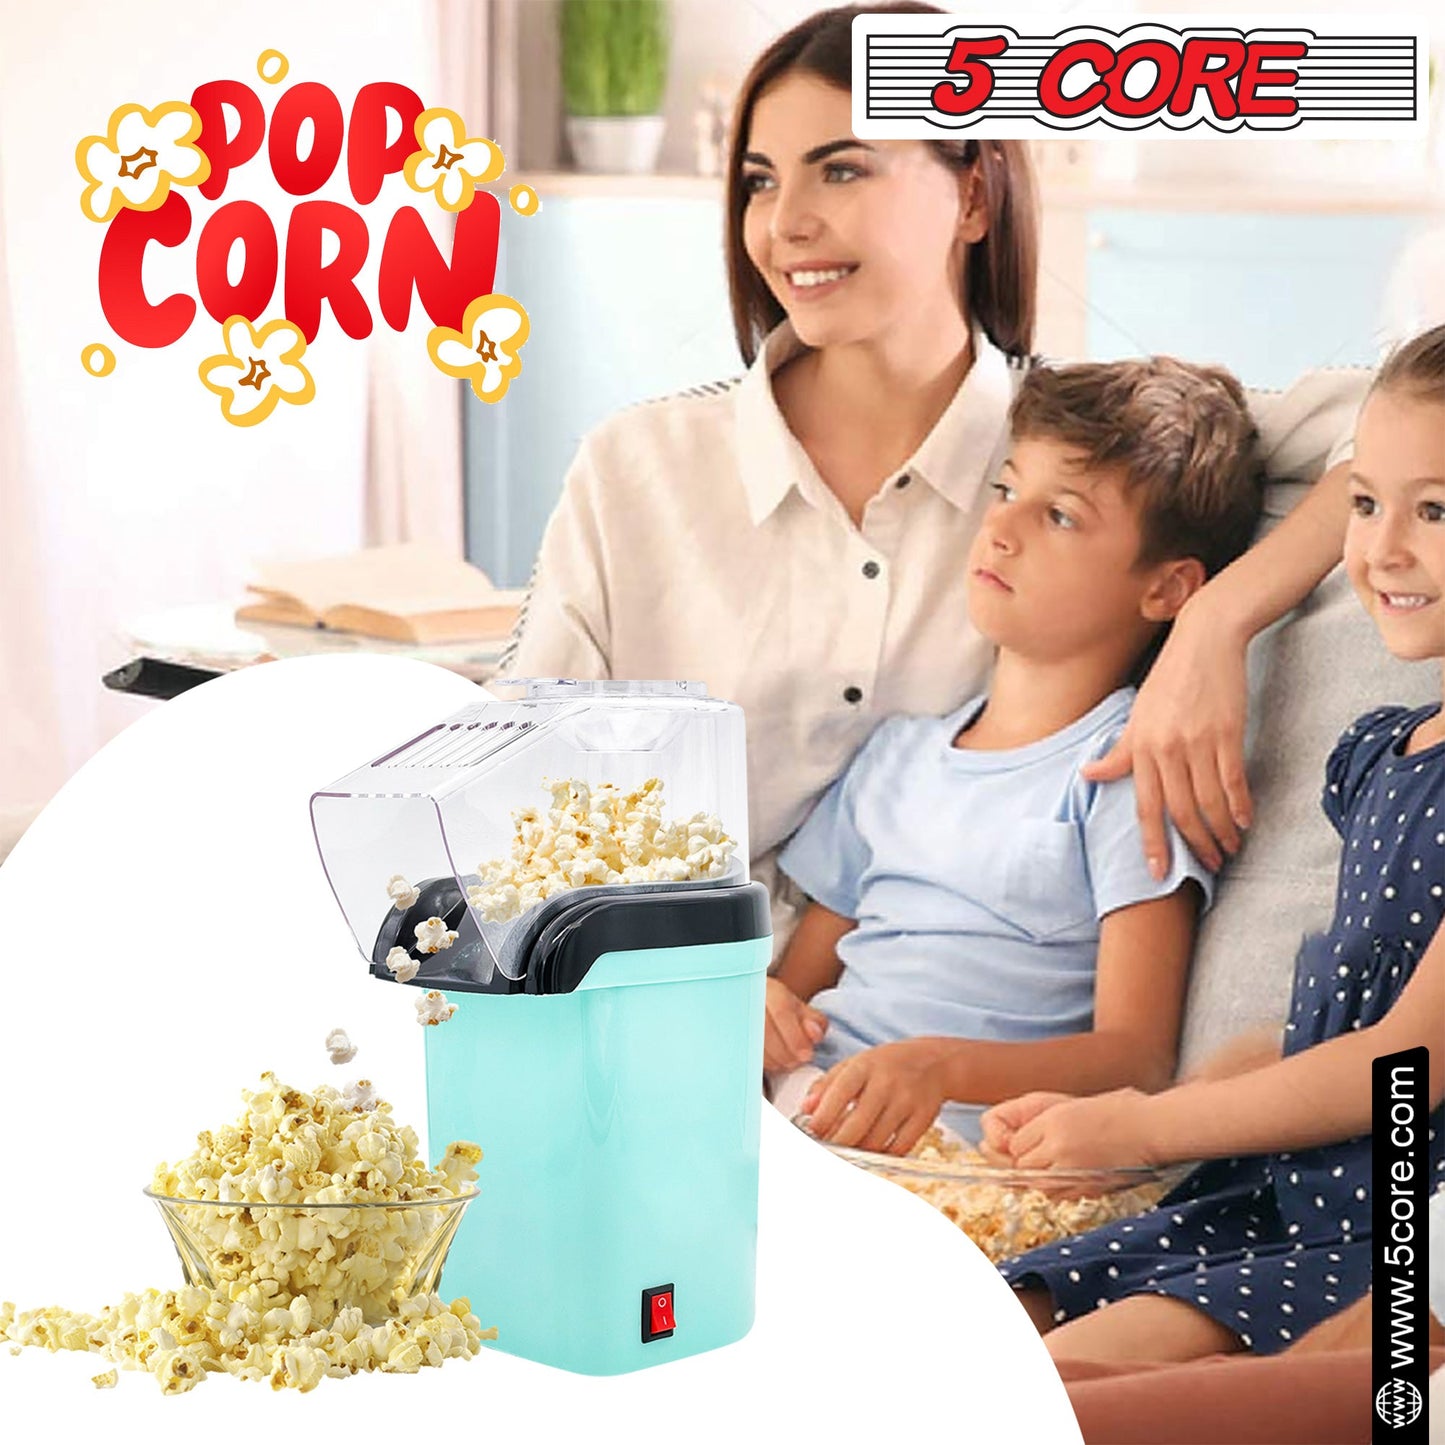 5Core Hot Air Popcorn Machine, 16 Cup, Electric Oil-Free Pop Corn